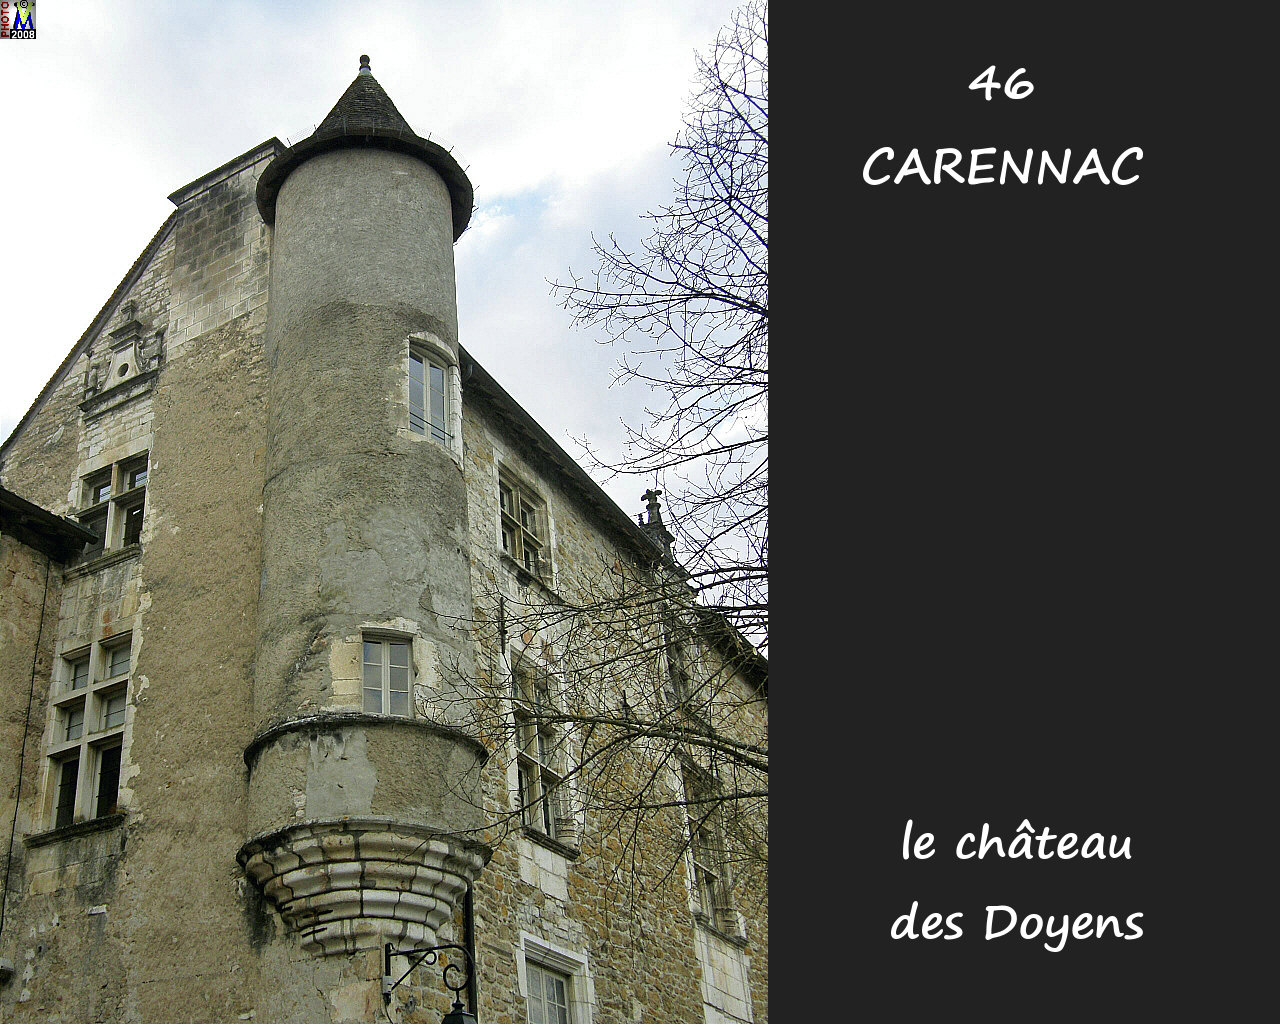 46CARENNAC_chateau_106.jpg